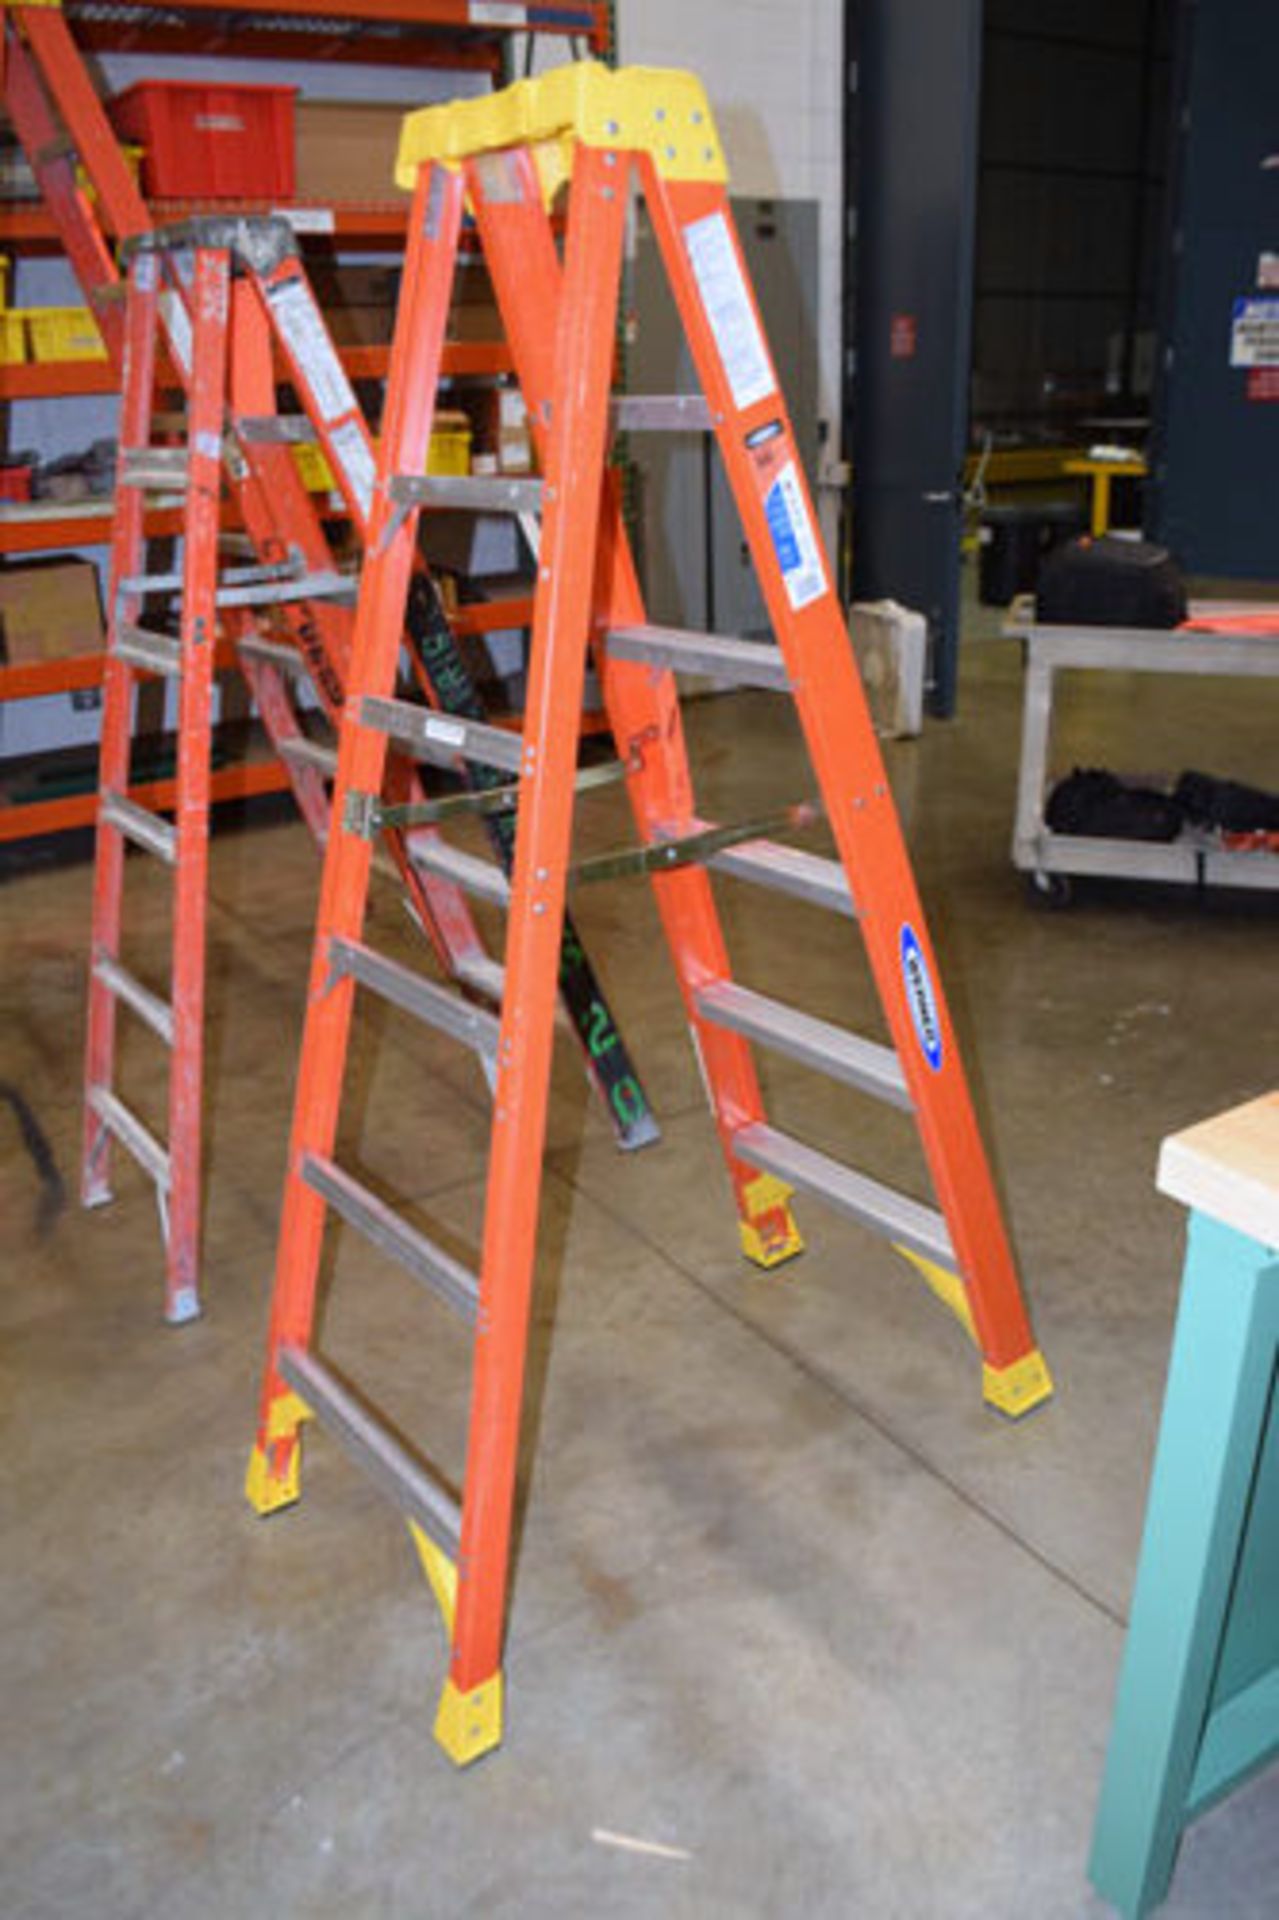 Ladder - Image 2 of 2